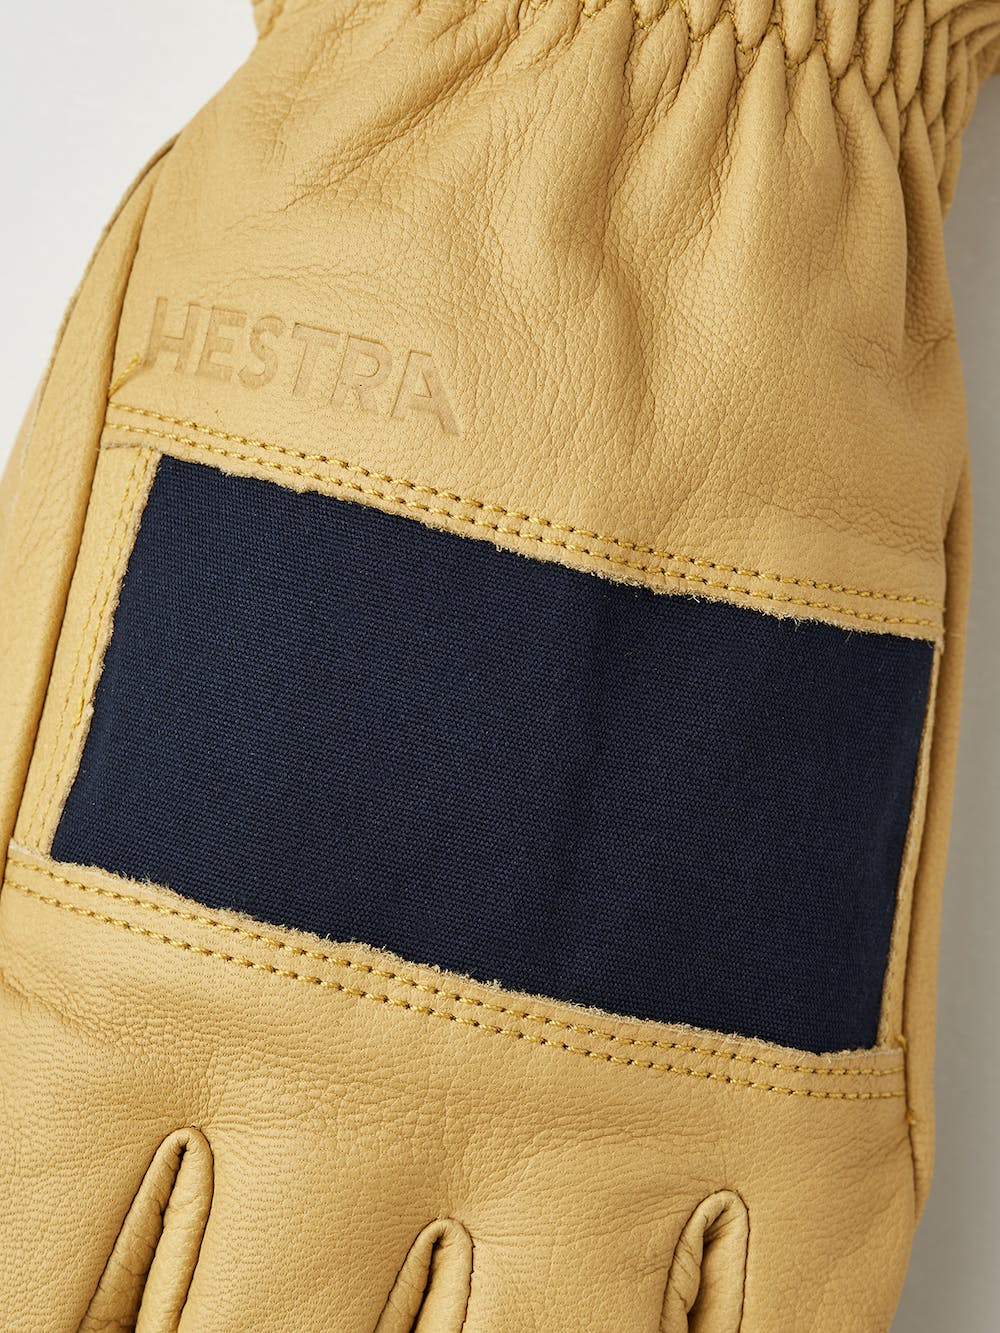 Hestra Njord Gloves